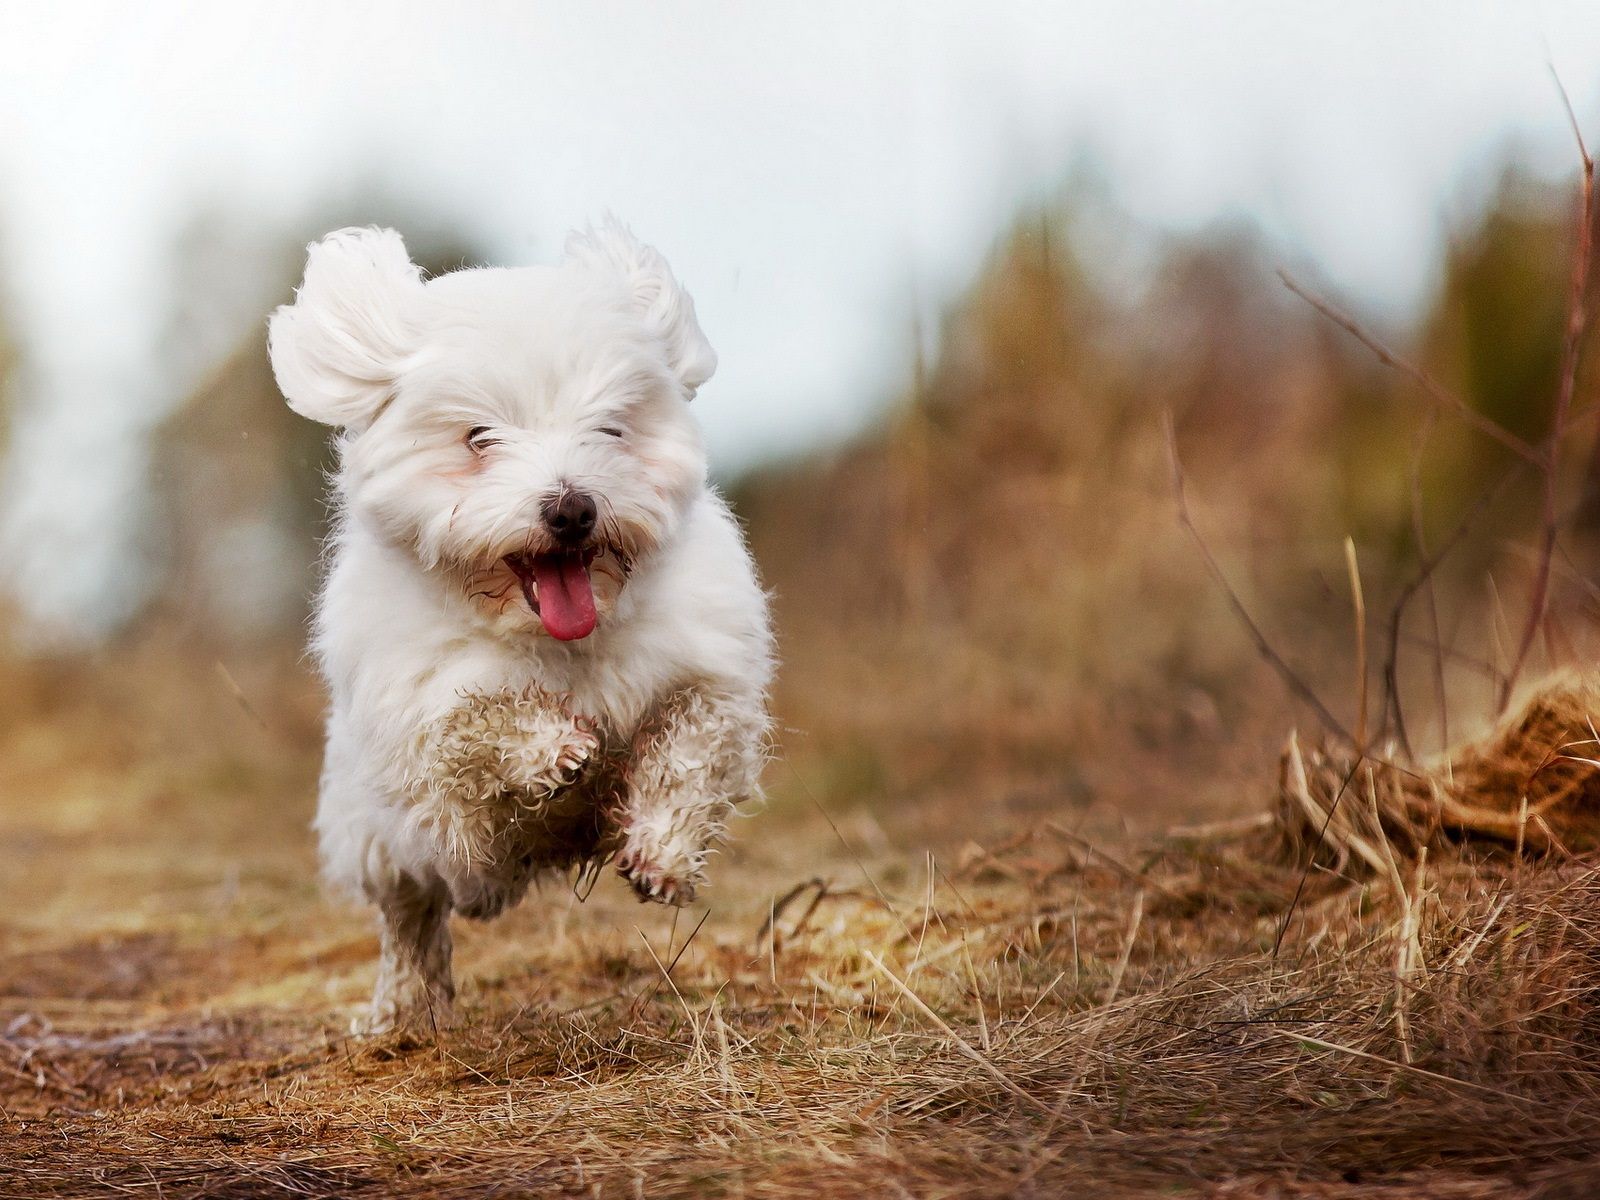 بچه سگ پشمالوی سفید در طبیعت در حال بازی و پرش